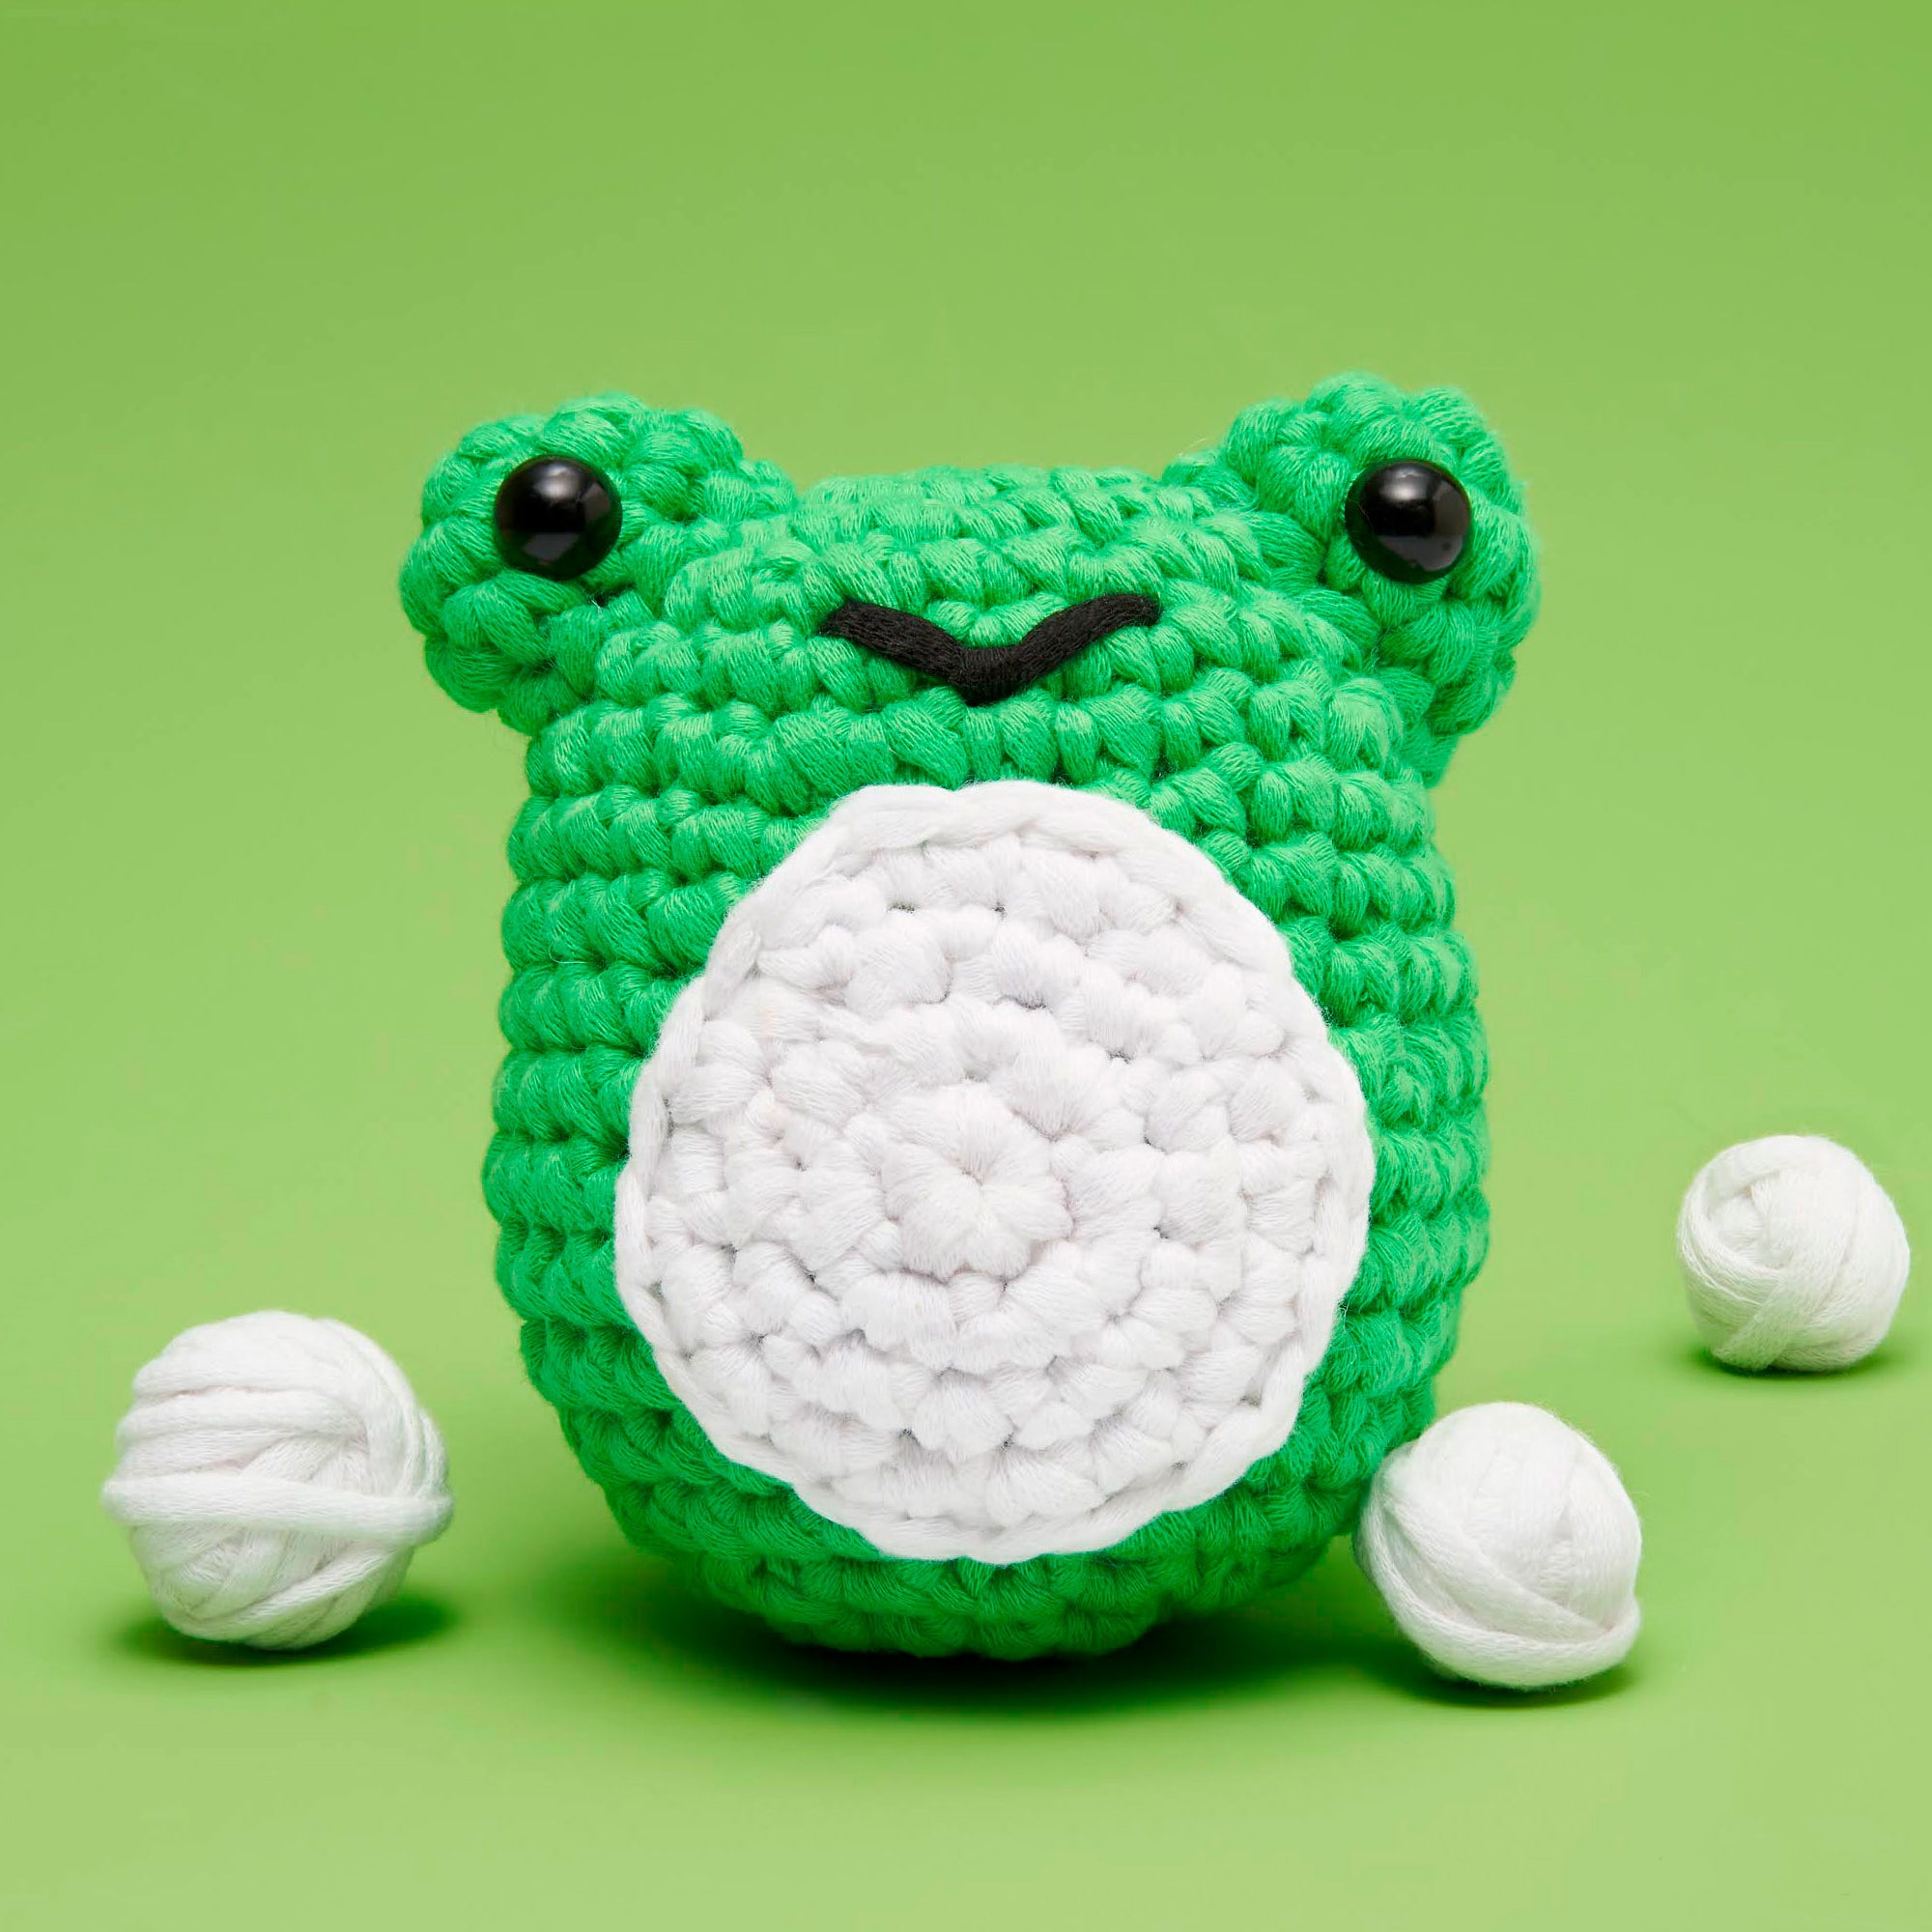 Crochet Kit for Beginners | CozyBomB™